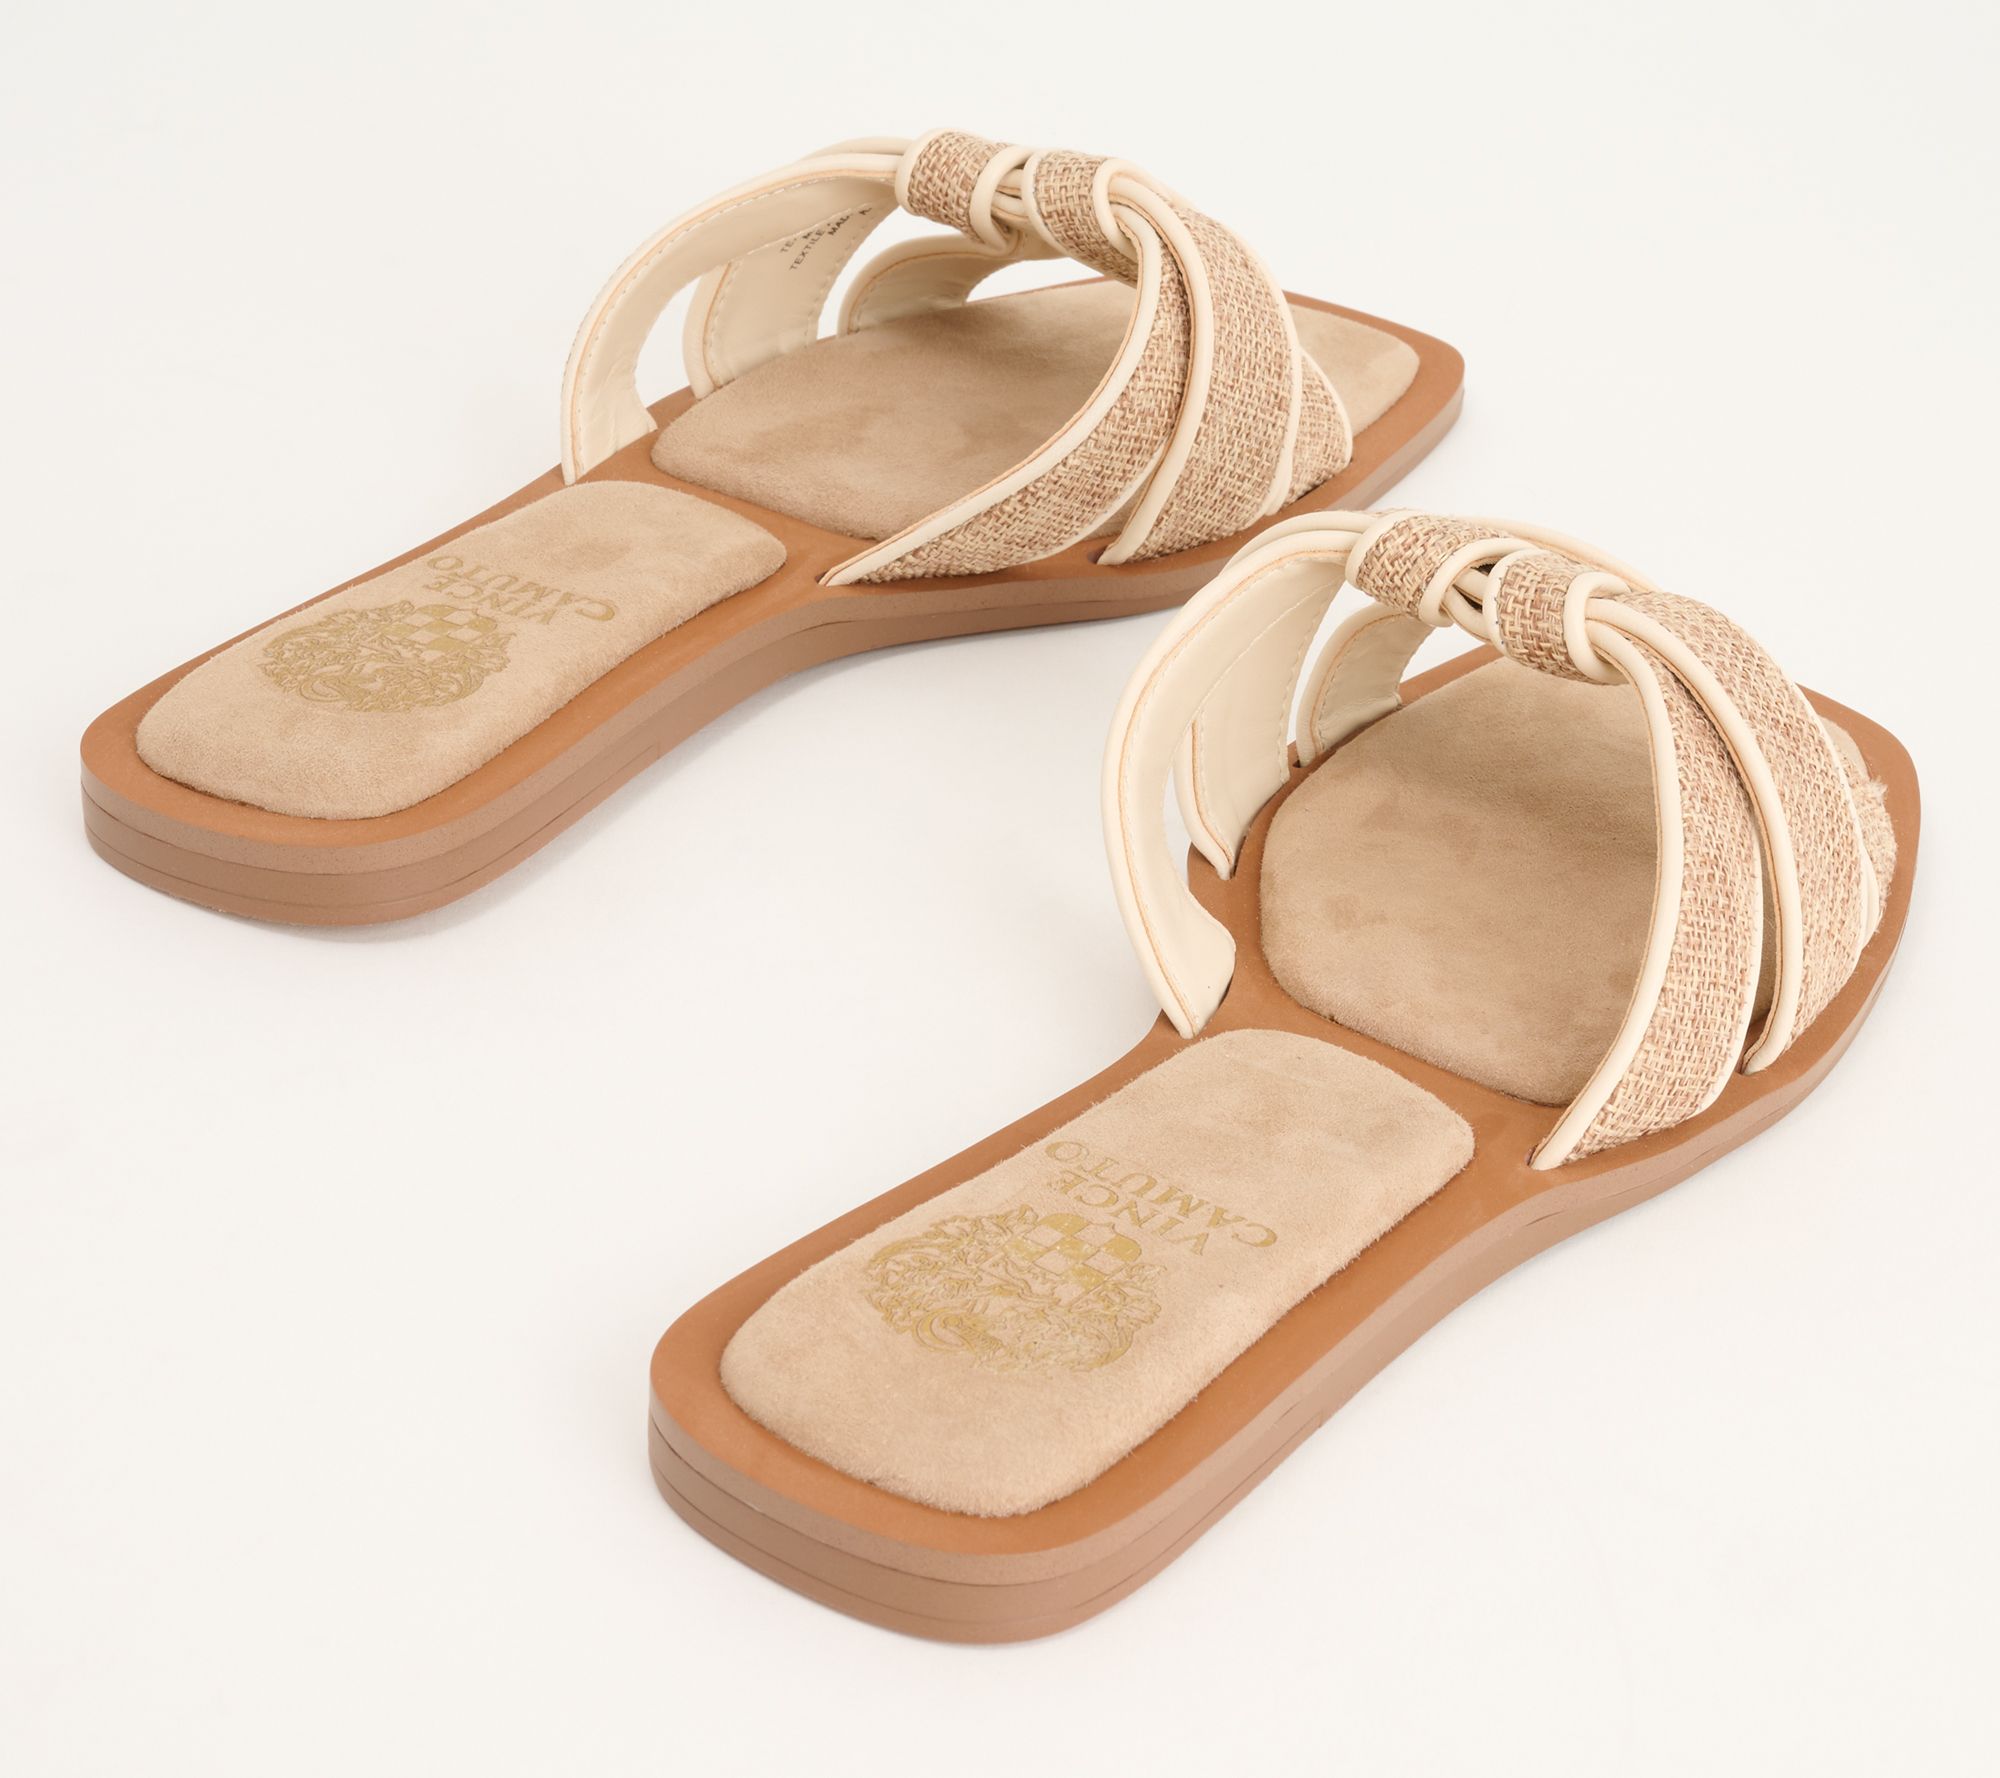 Vince Camuto Leather Slide Sandals - Barcellen 